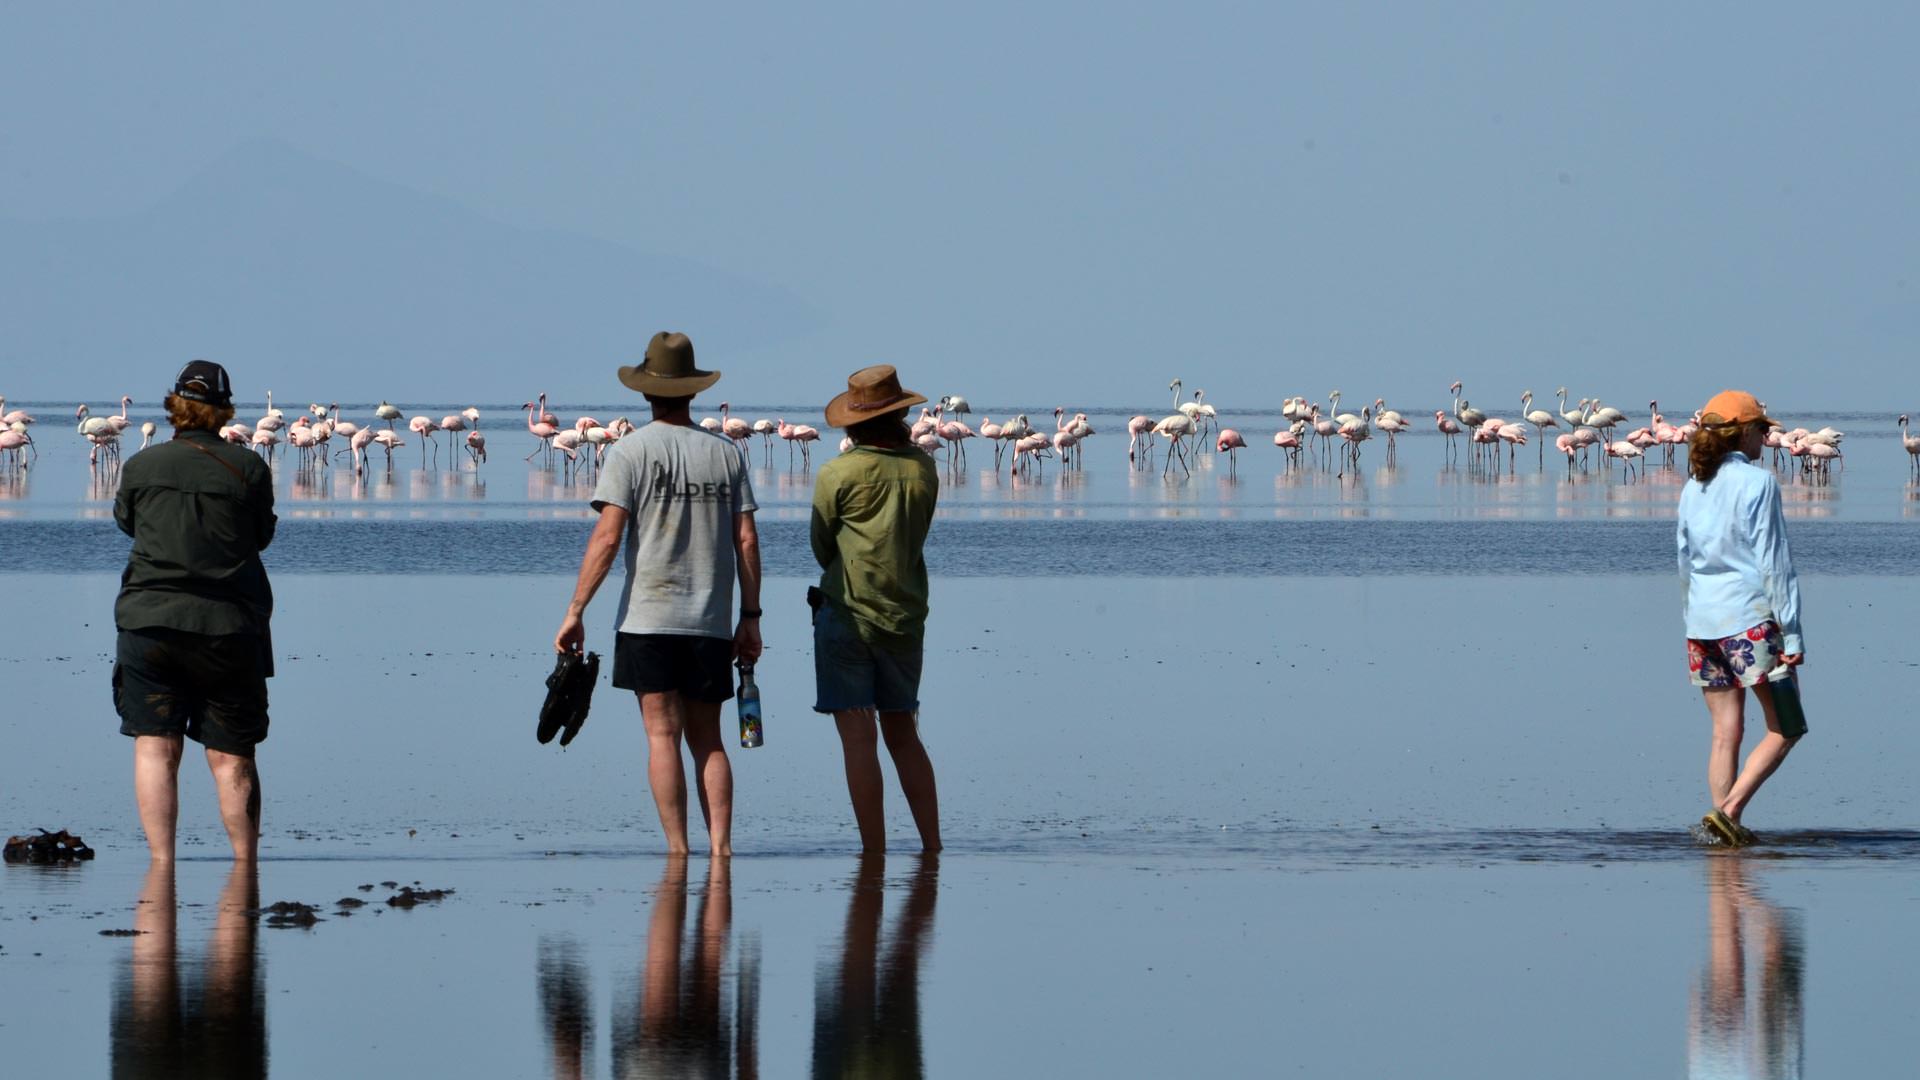 Wading into Lake Natron to view flamingo